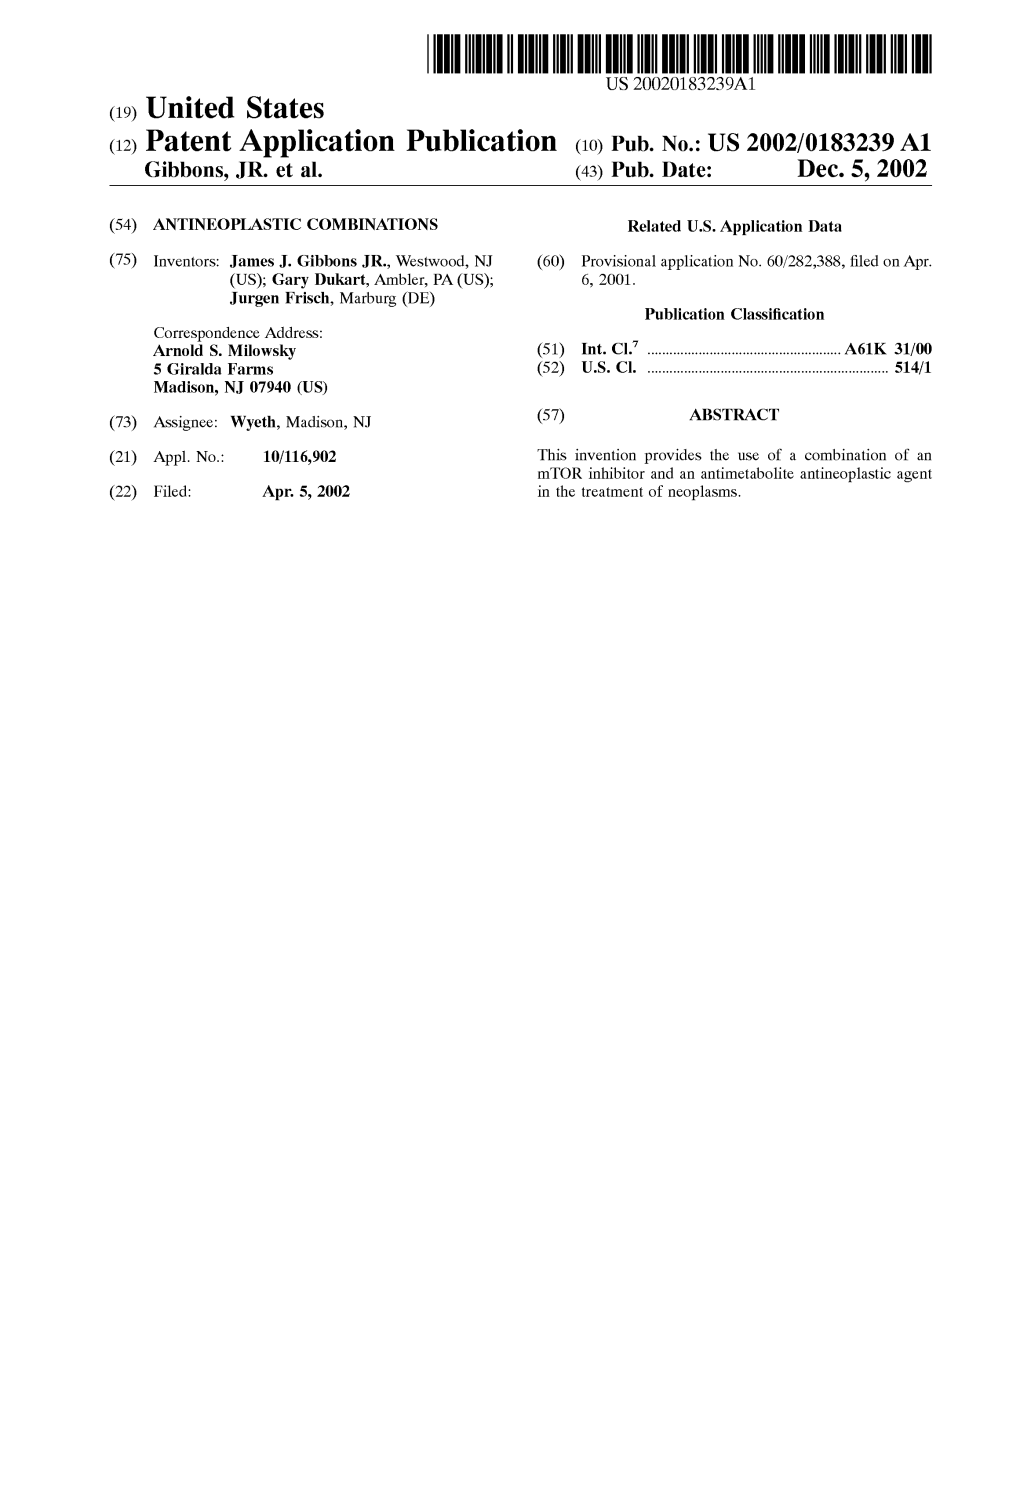 (12) Patent Application Publication (10) Pub. No.: US 2002/0183239 A1 Gibbons, JR